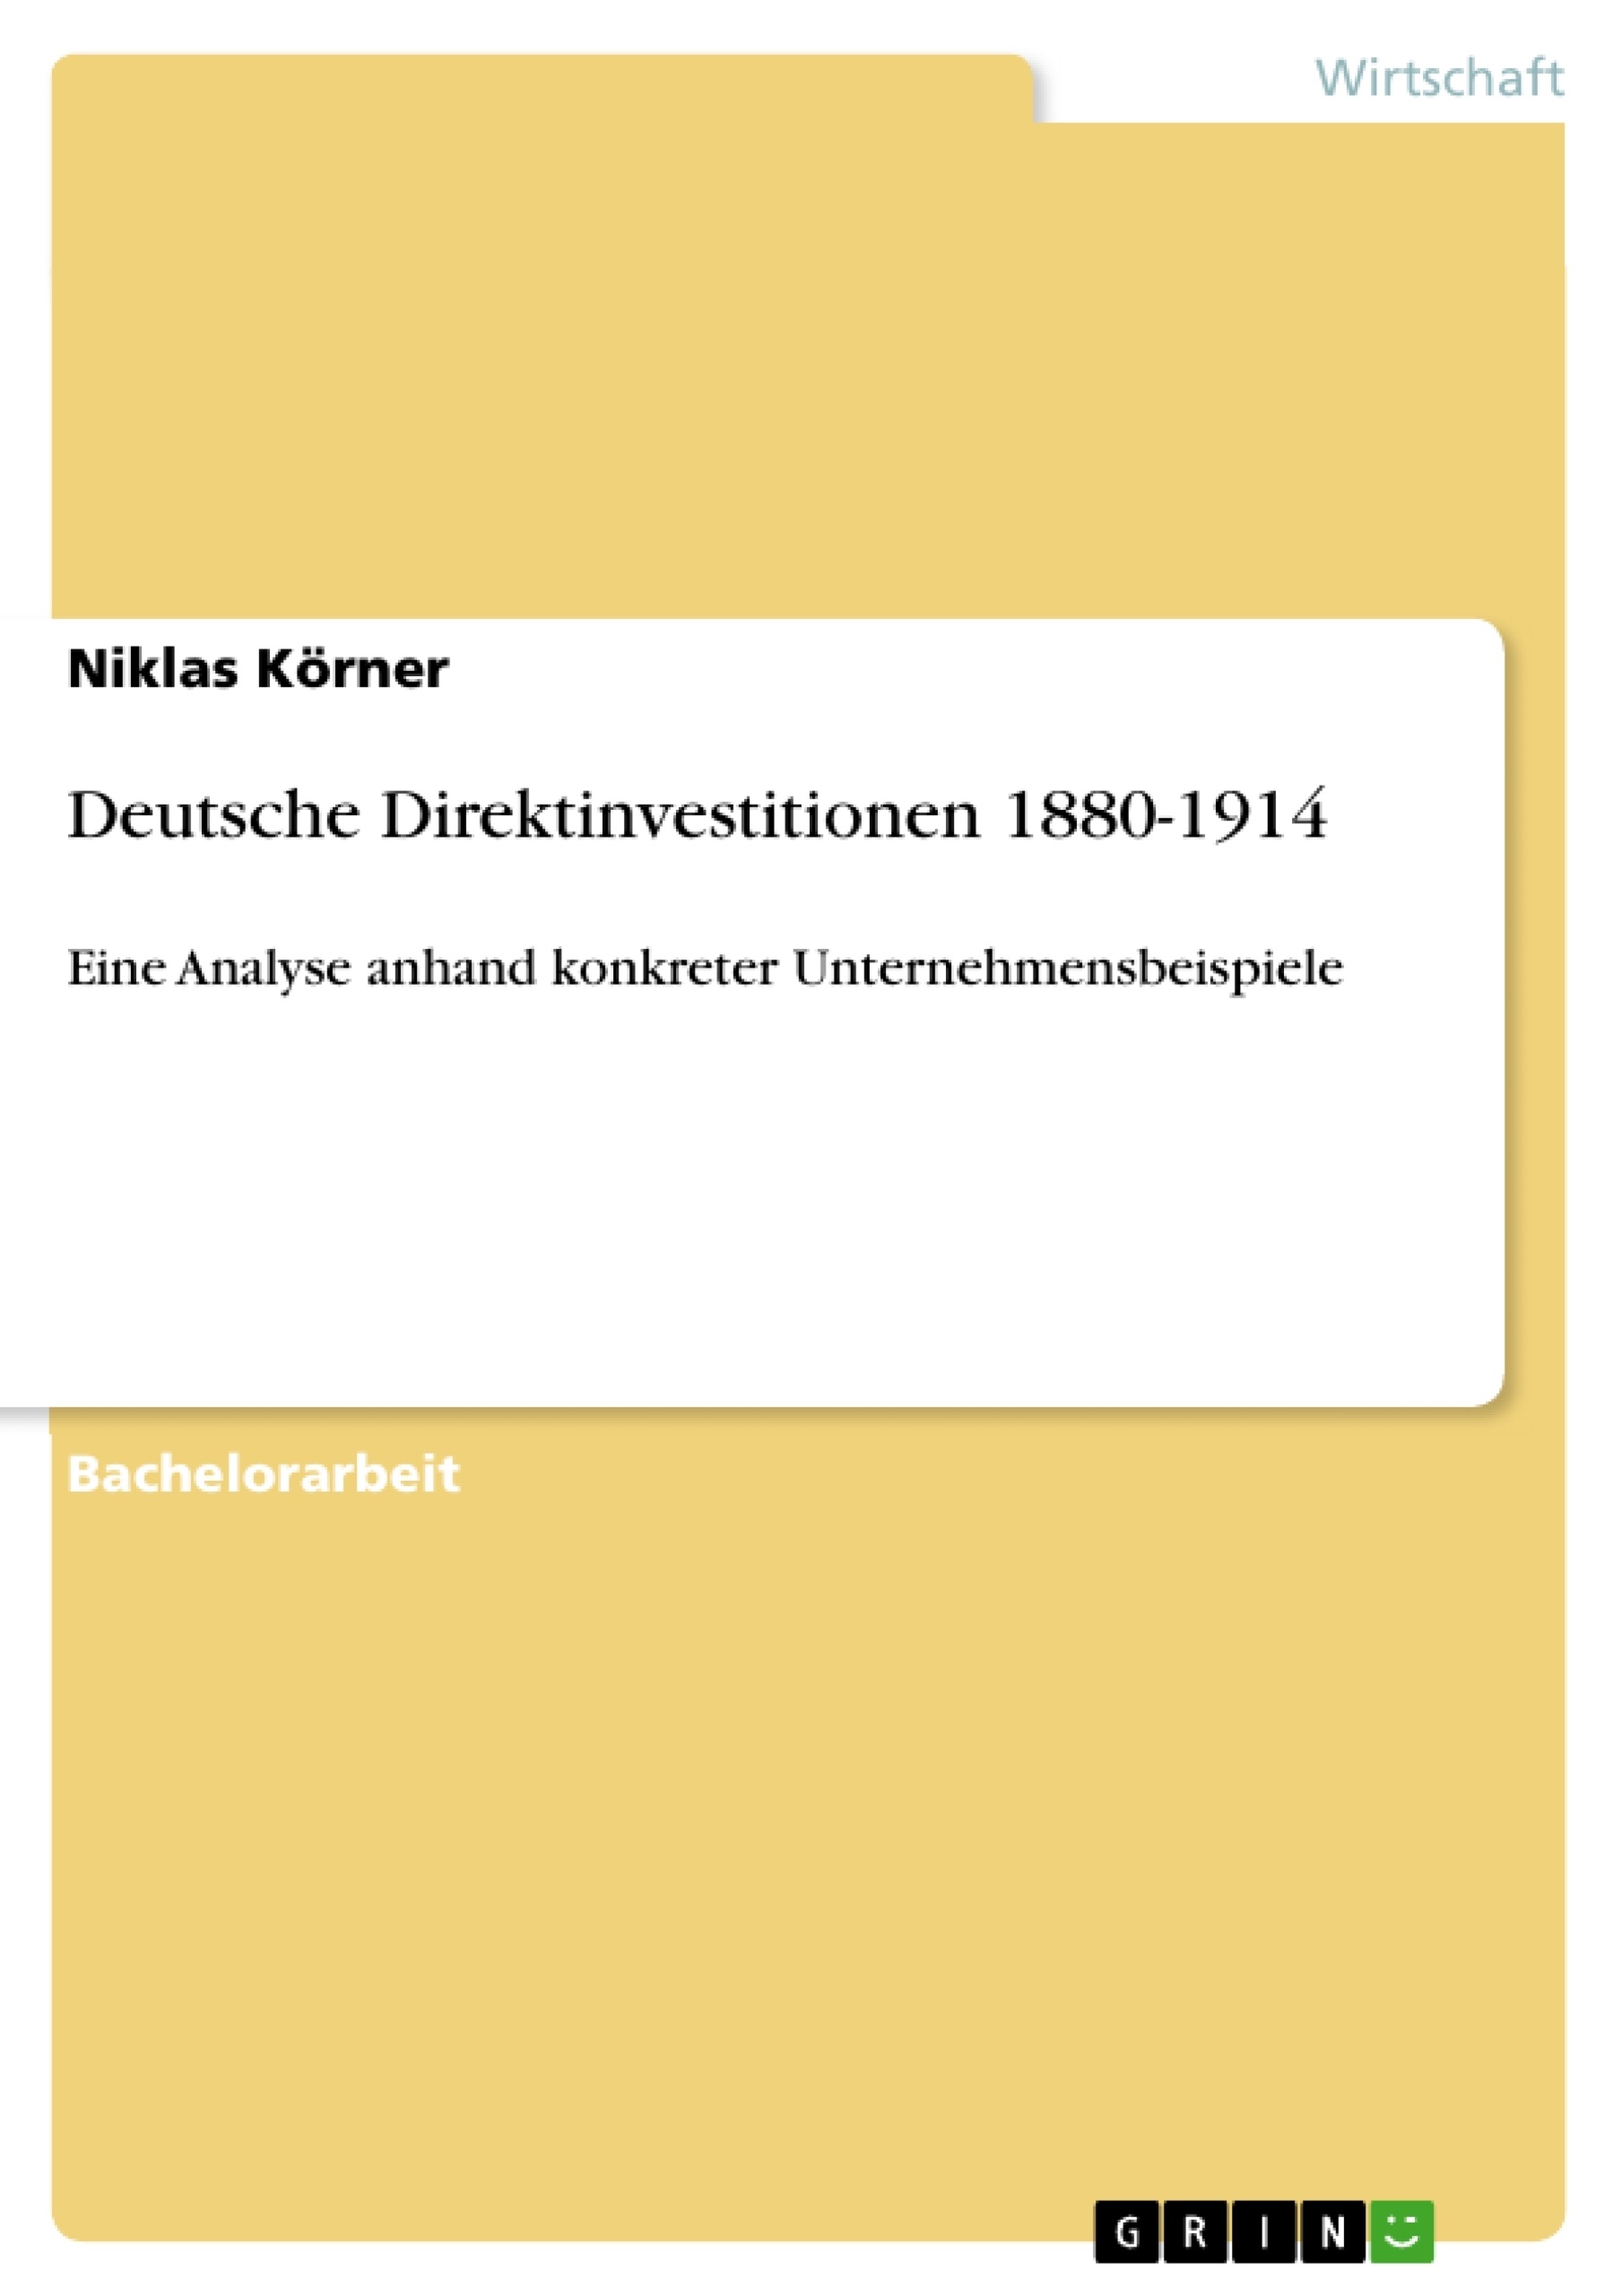 Title: Deutsche Direktinvestitionen 1880-1914